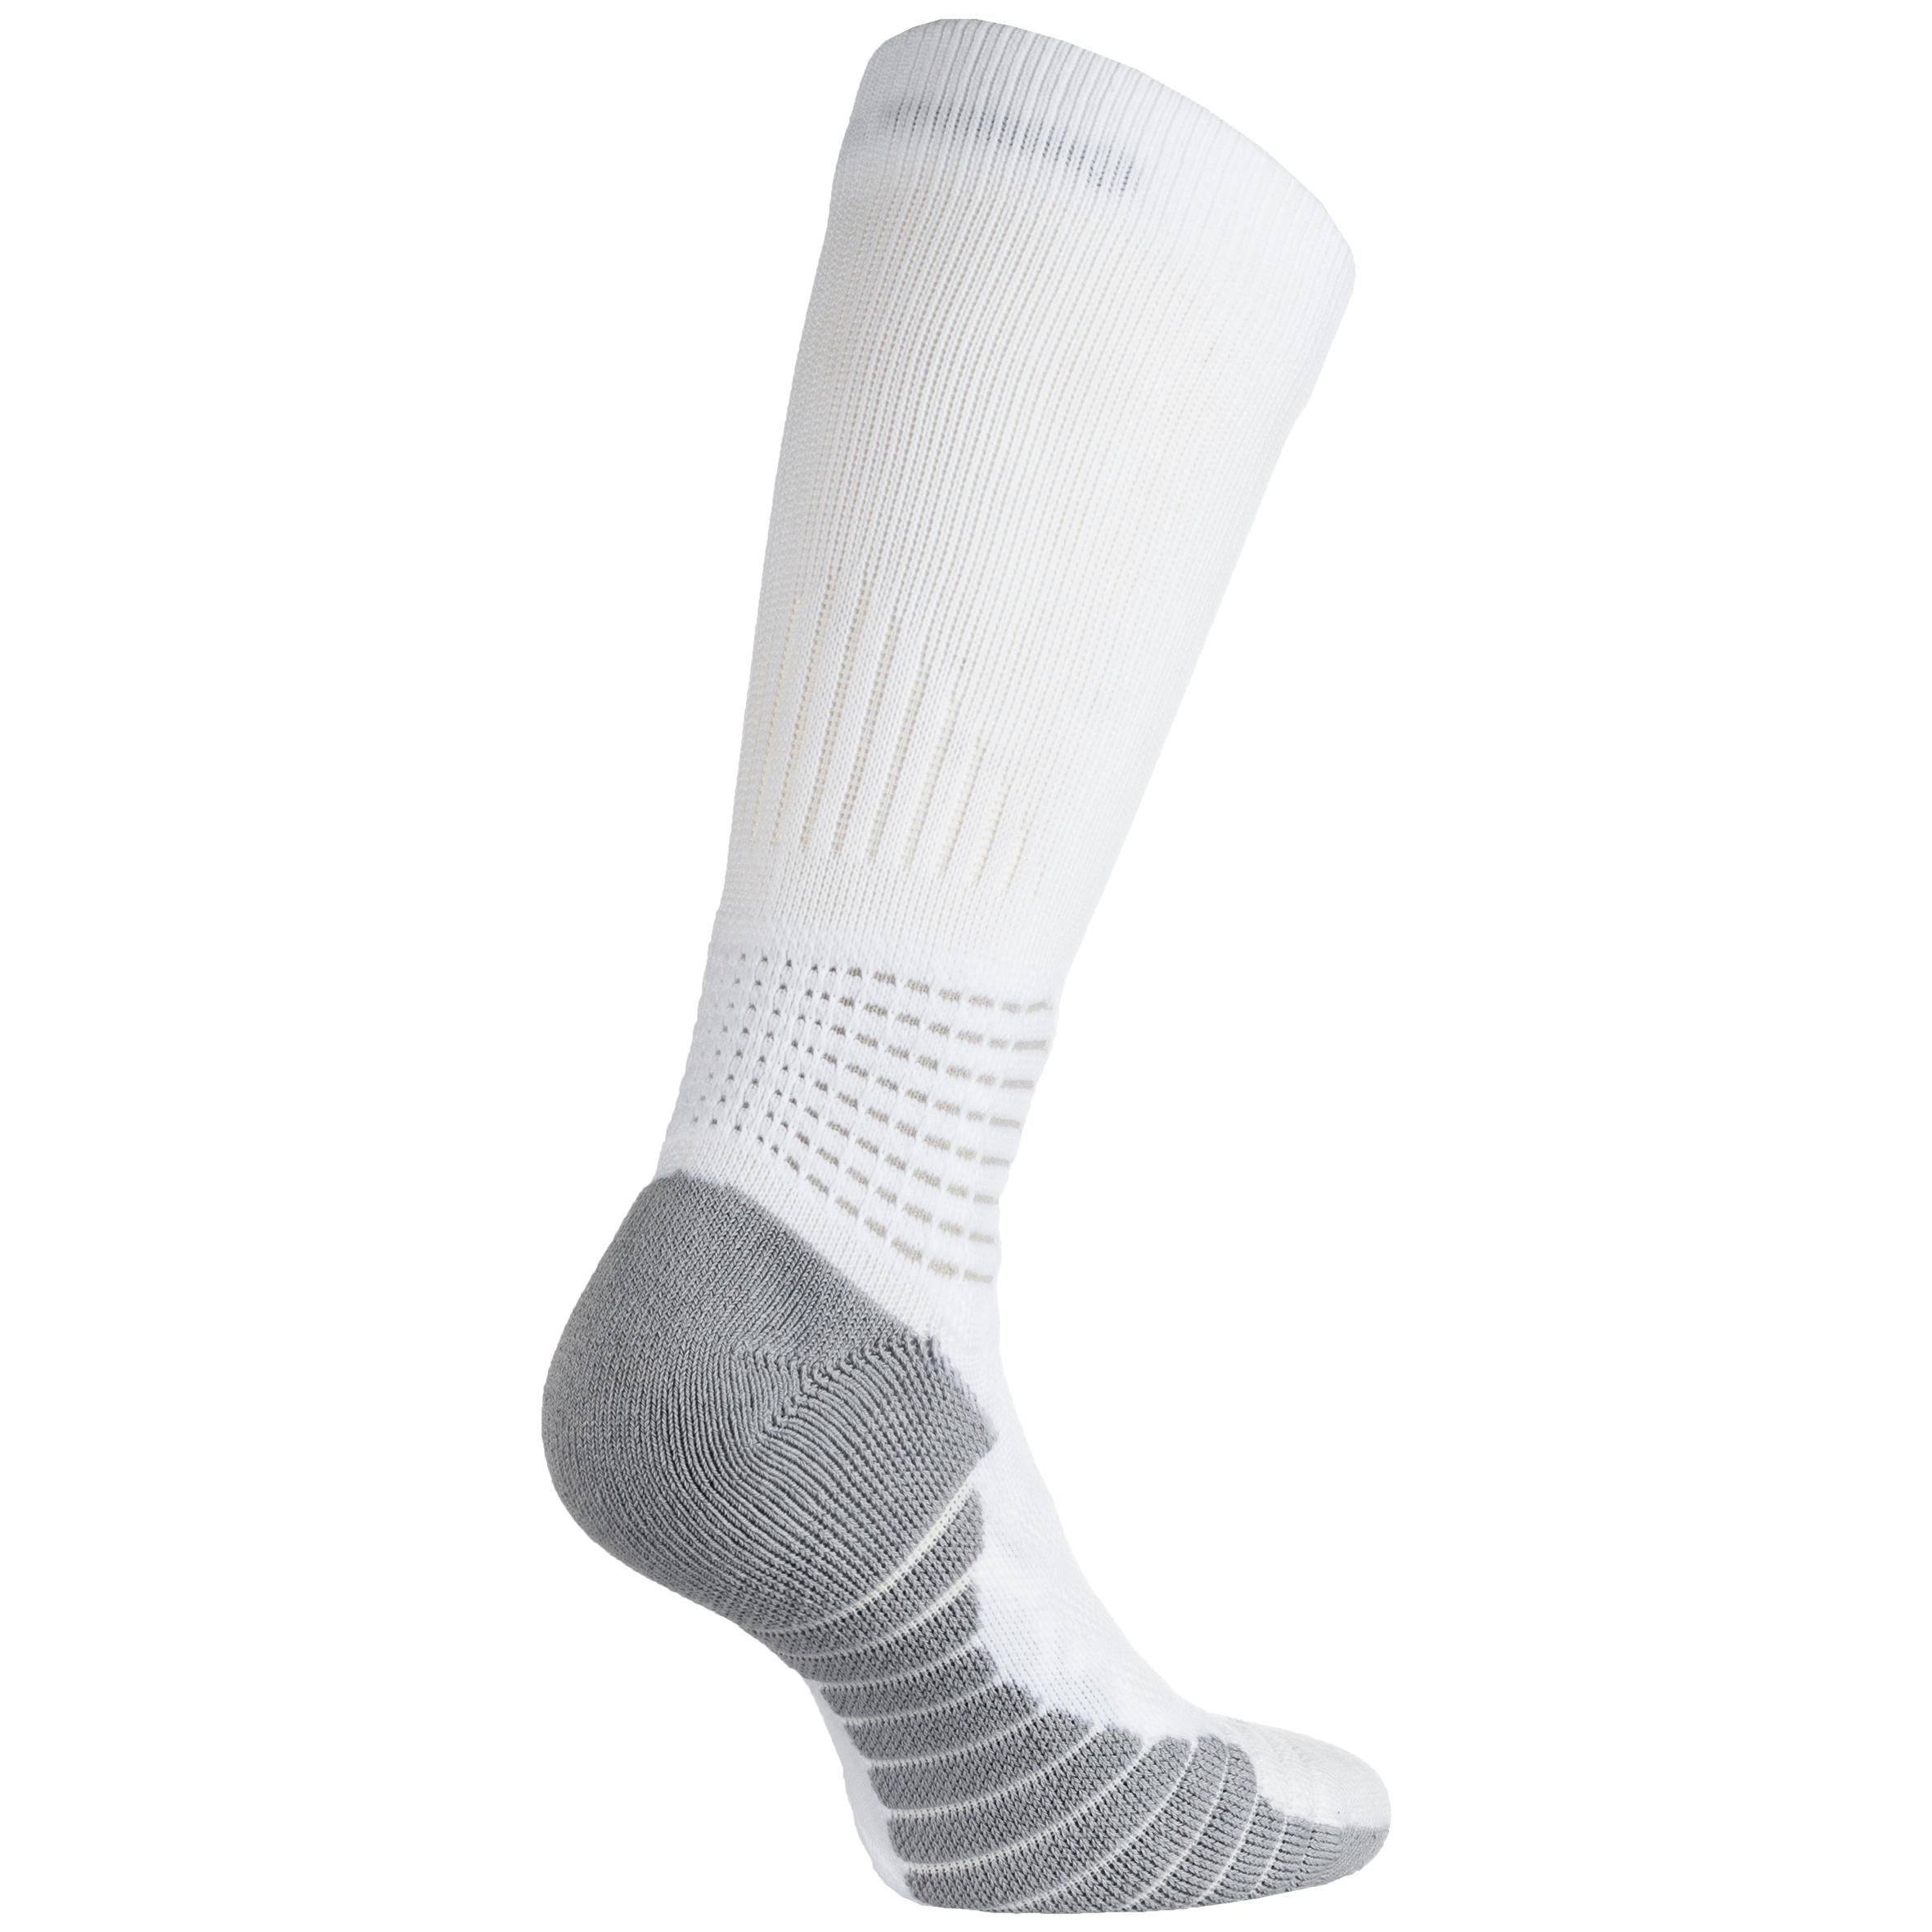 Men's/Women's Mid-Rise Basketball Socks SO900 - White 4/8